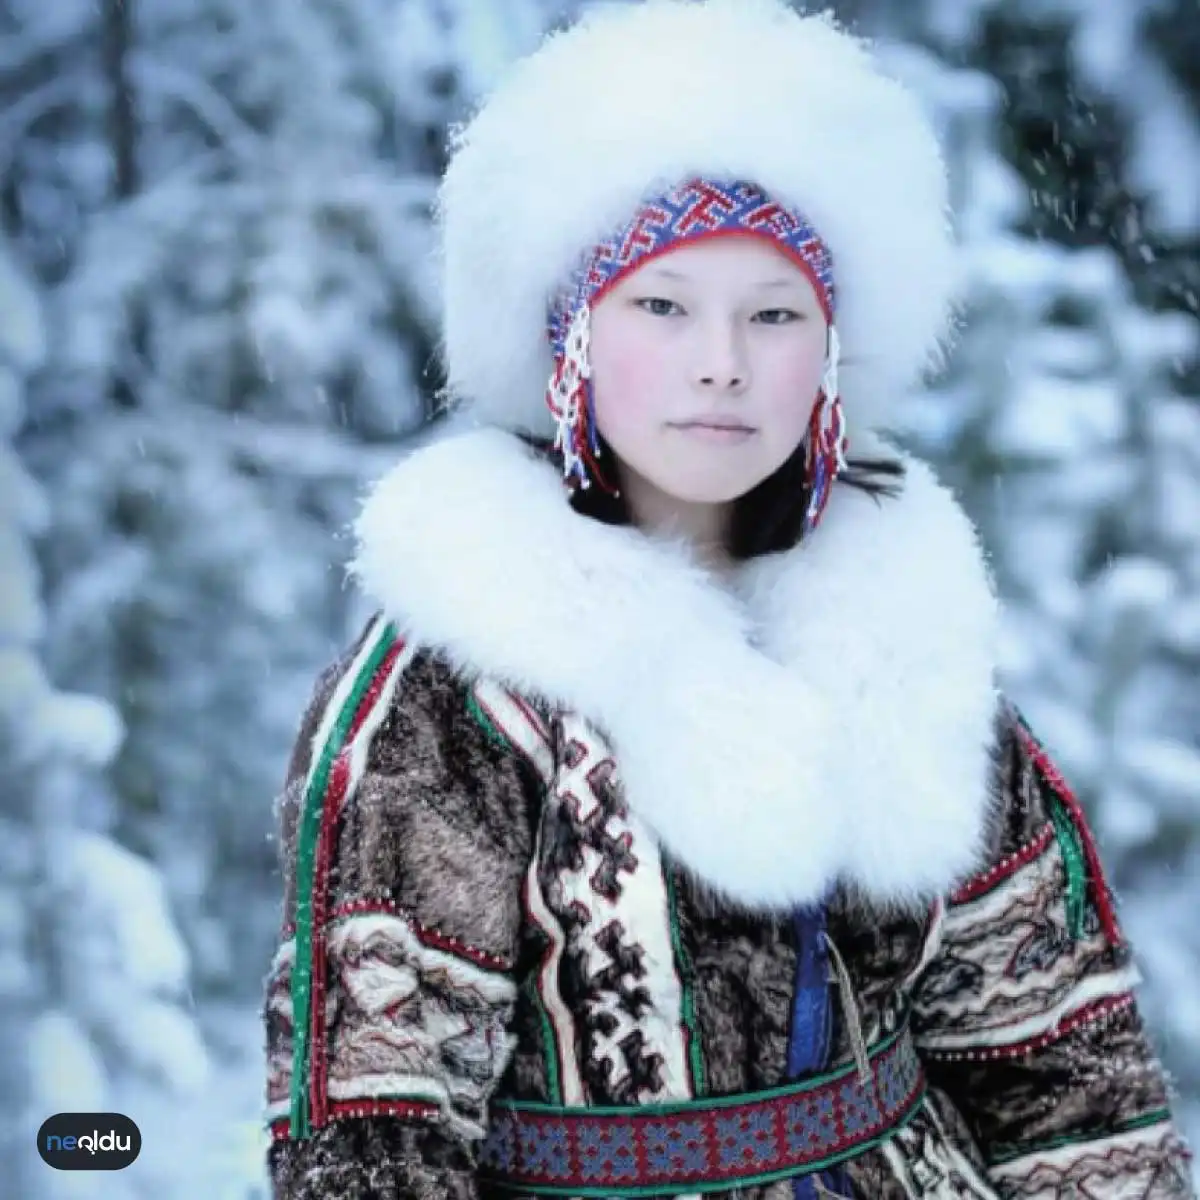 Sibirya ve Yakutistan Hakkında Bilgi